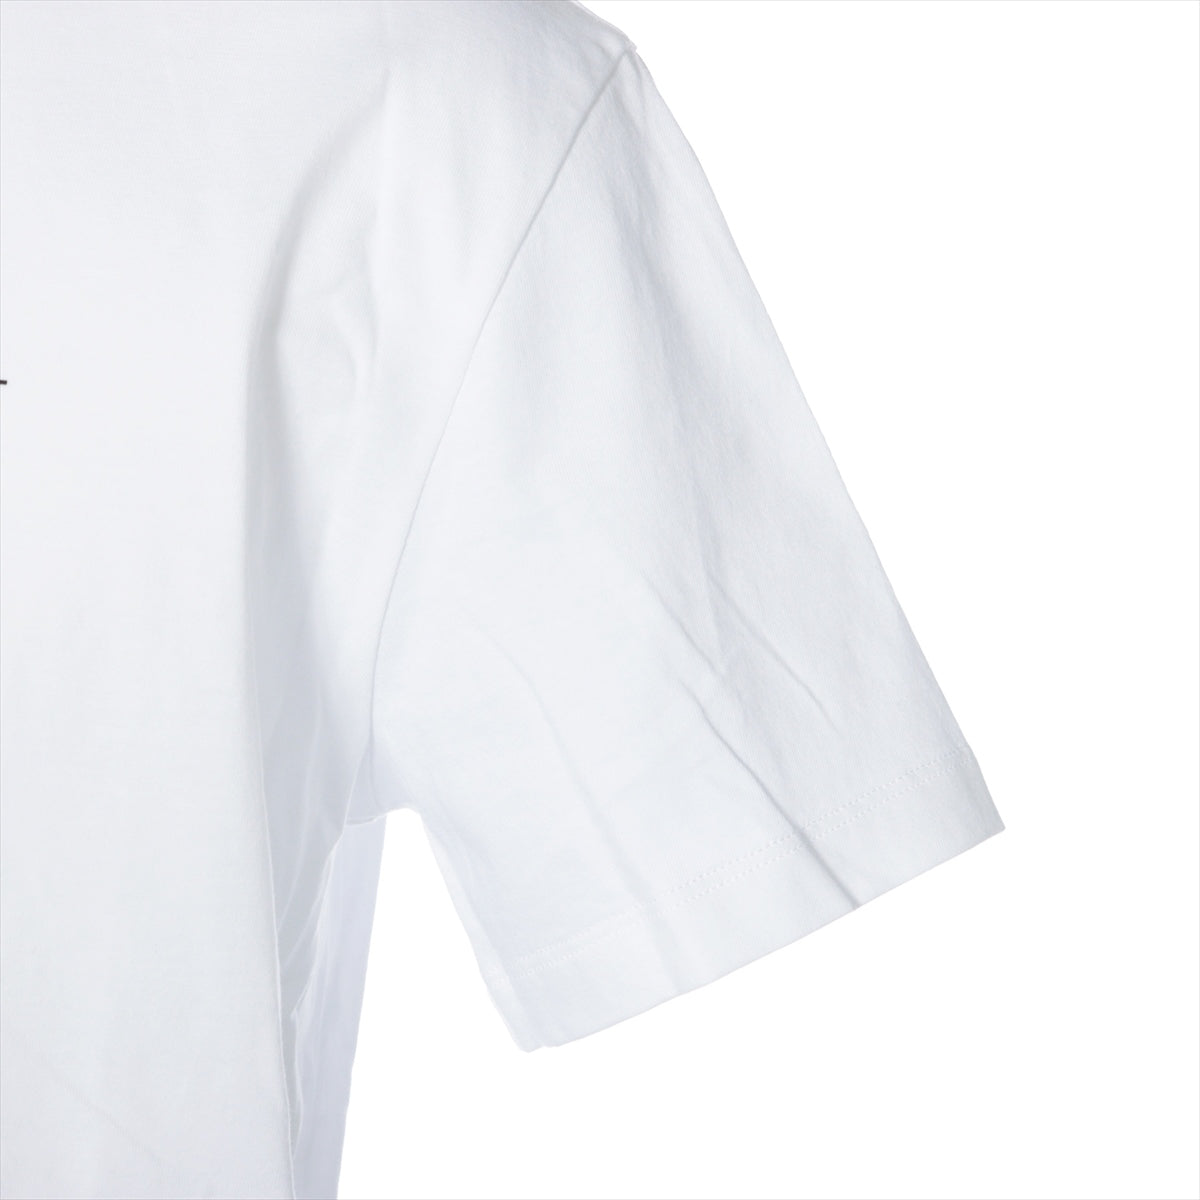 ヴァレンティノ コットン Tシャツ S メンズ ホワイト VLTNロゴ WB3MG07D3V6